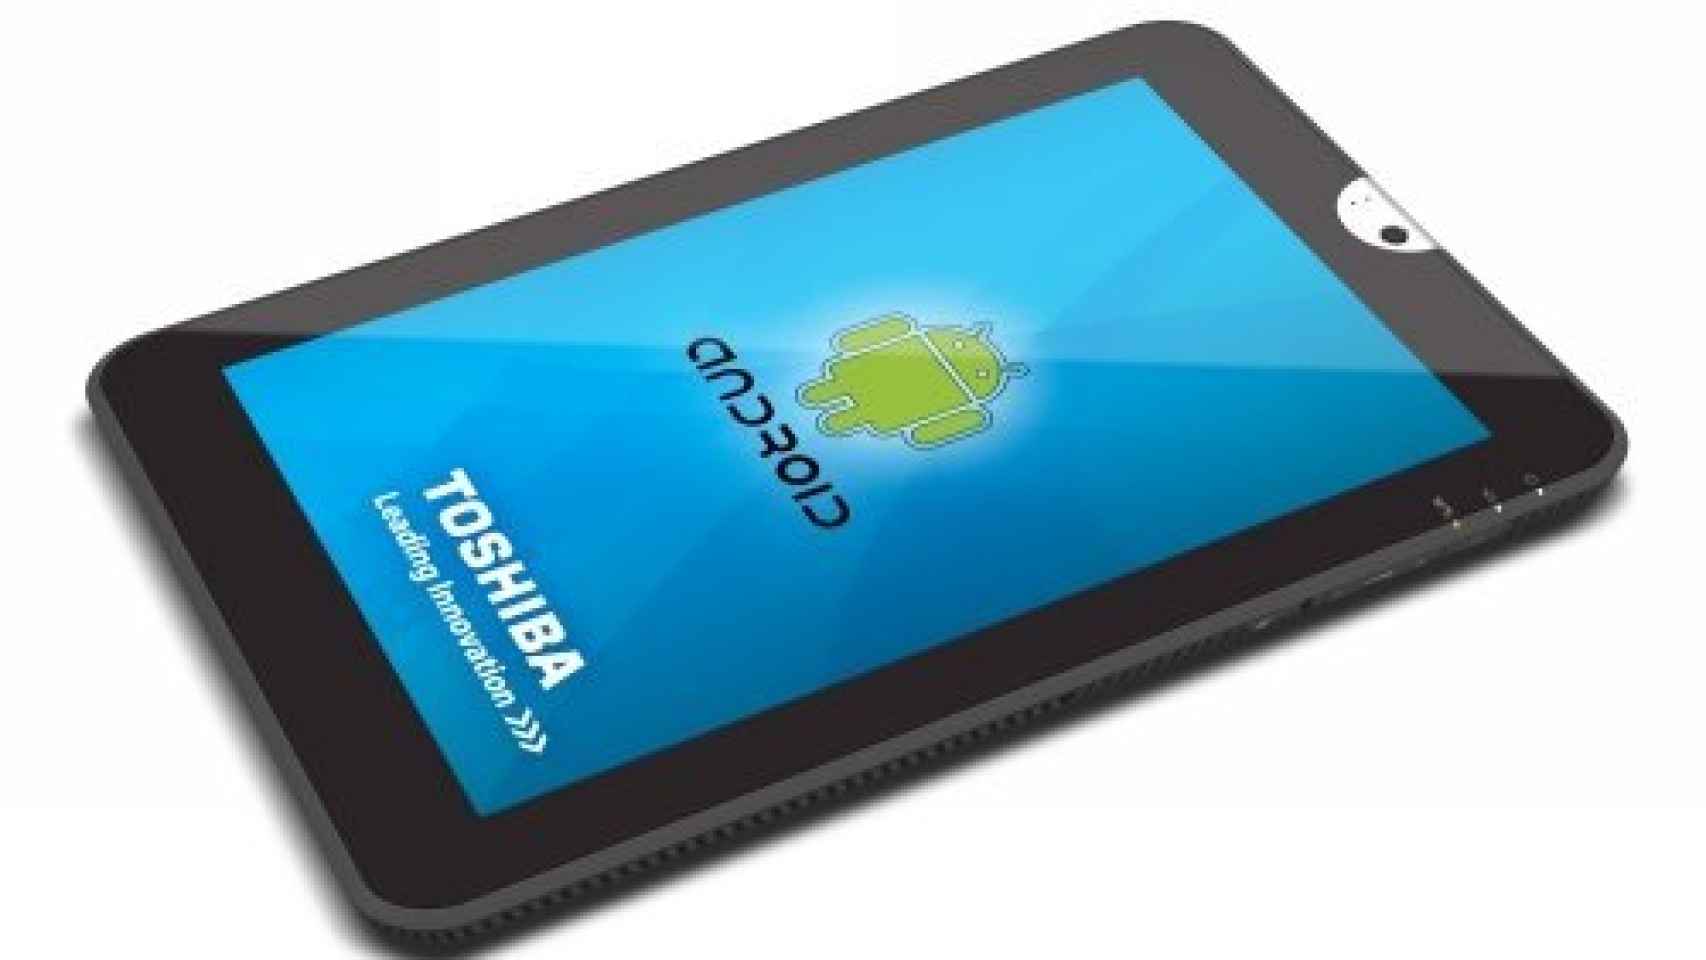 Precios de la tablet Toshiba ANT con Honeycomb